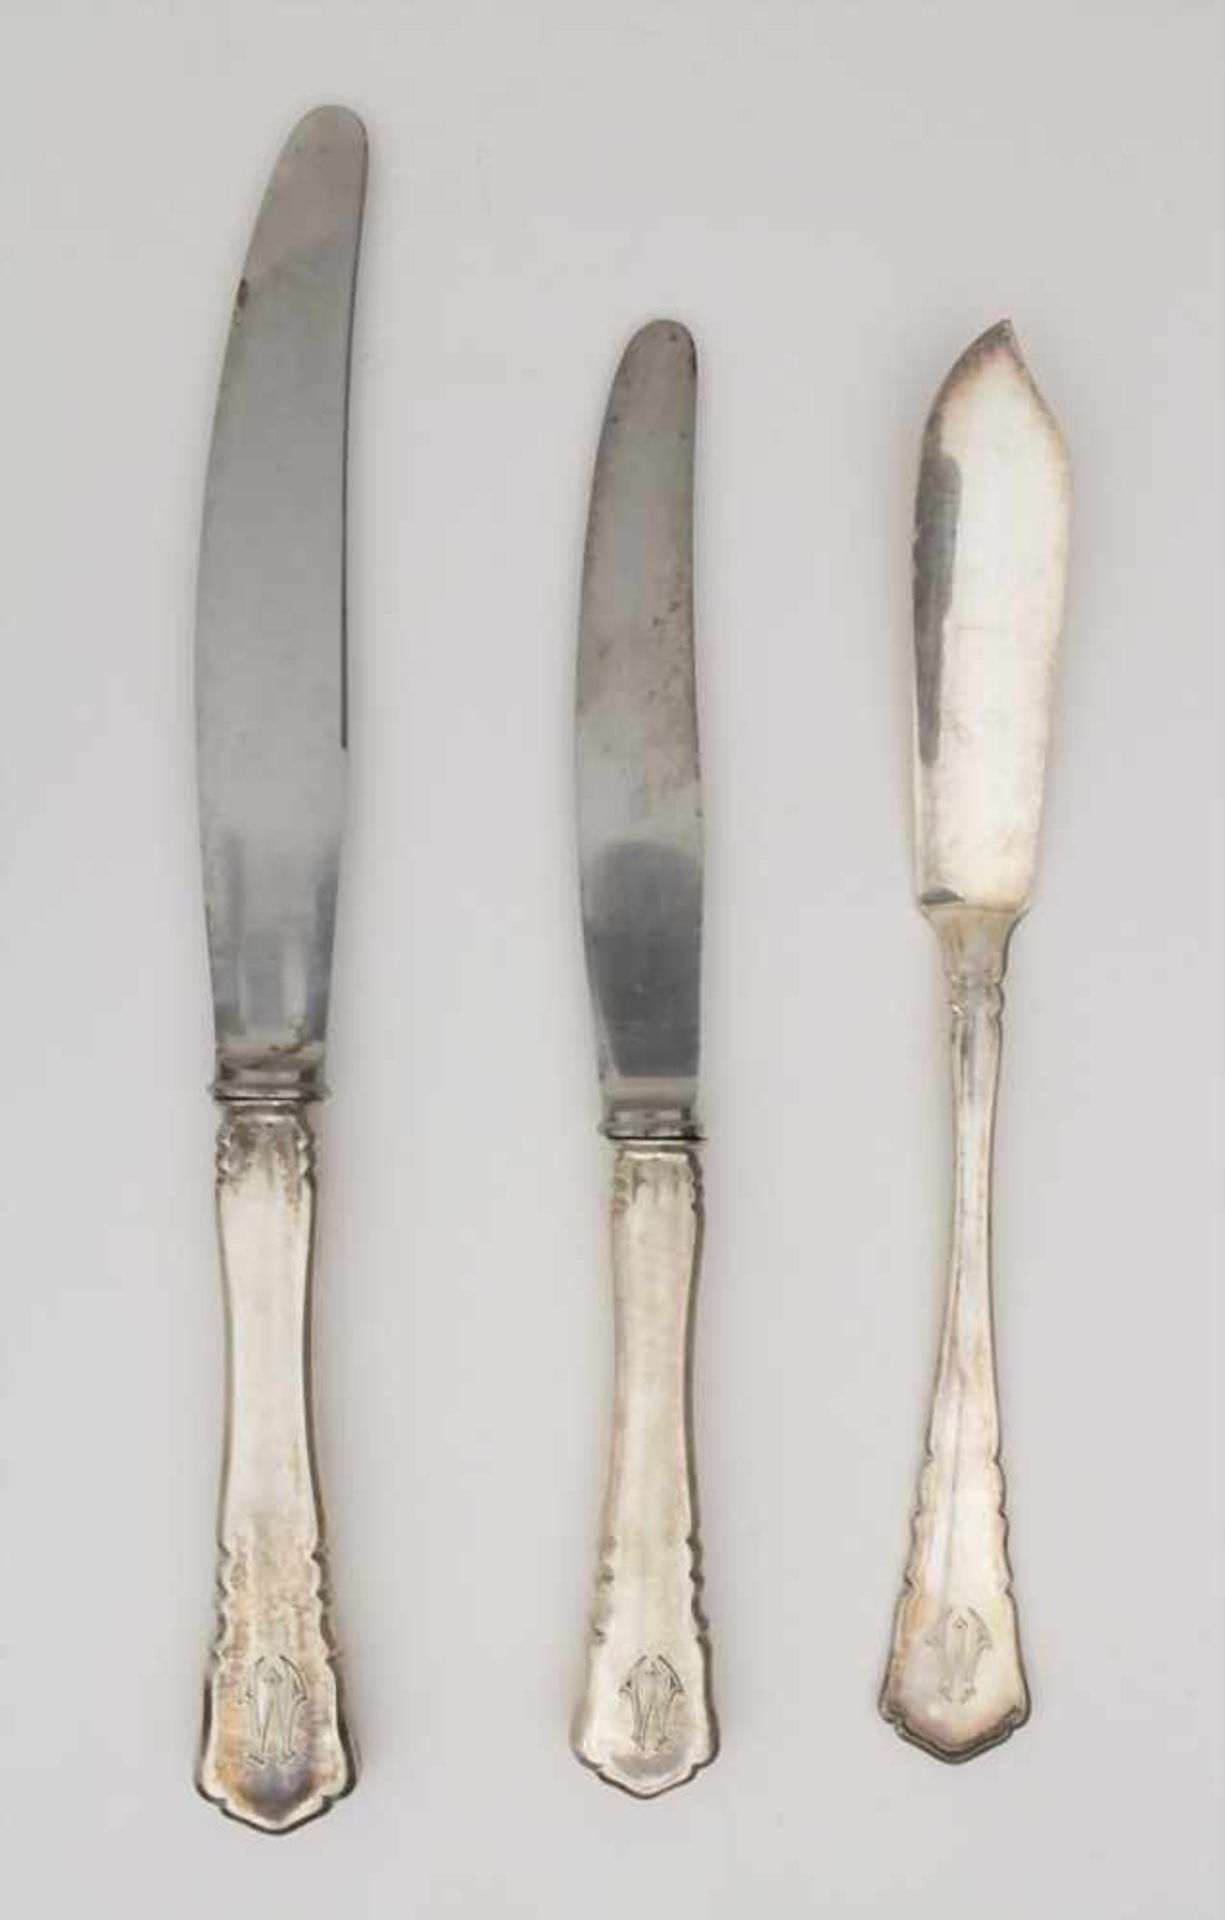 Silberbesteck für 12 Personen mit 2 Silberplatten / A silver cutlery for 12 people with 2 silver - Bild 8 aus 14